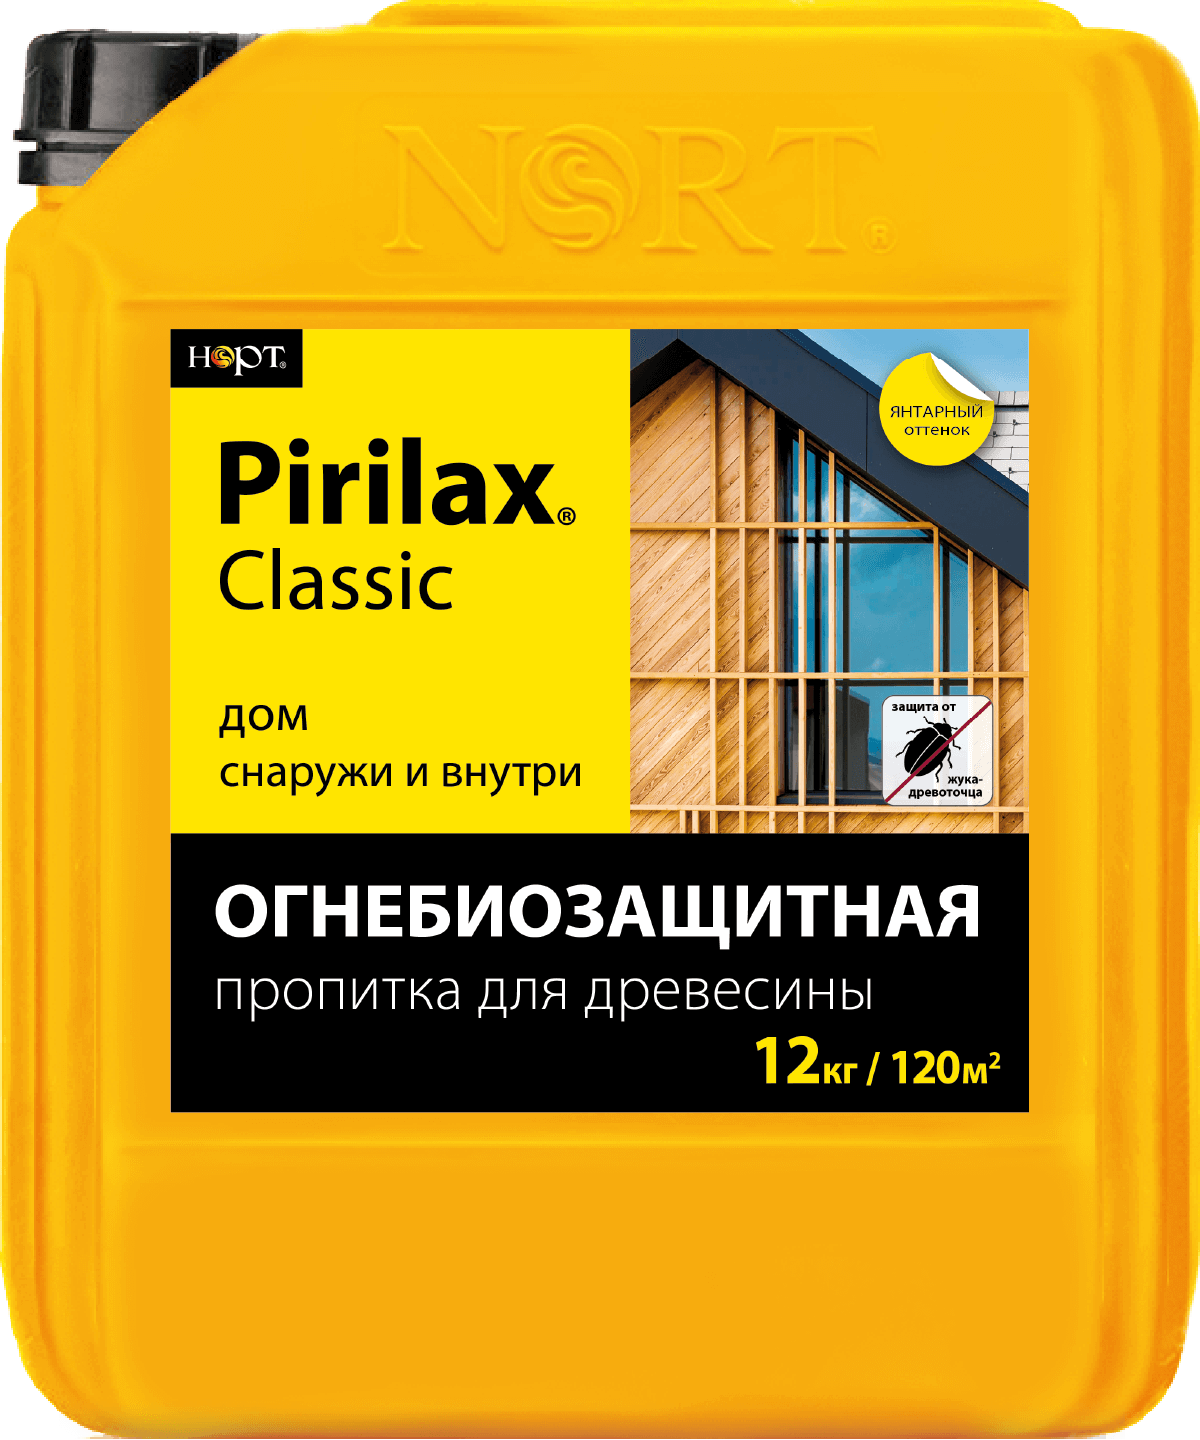 Пропитка огнебиозащита Пирилакс Pirilax classic классик 12 кг